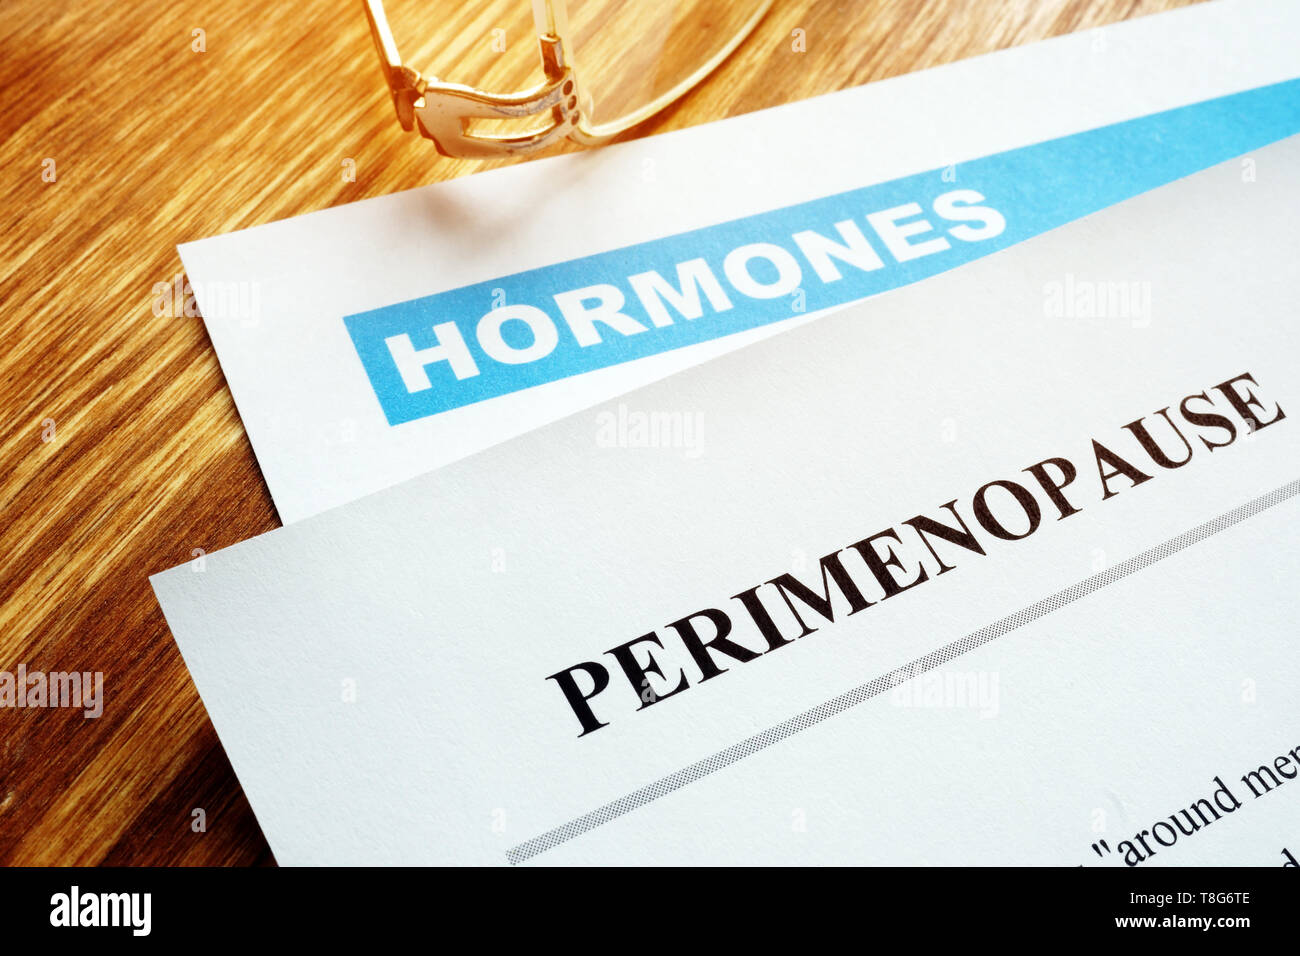 Perimenopausa e della menopausa concetto. Documenti su ormoni. Foto Stock